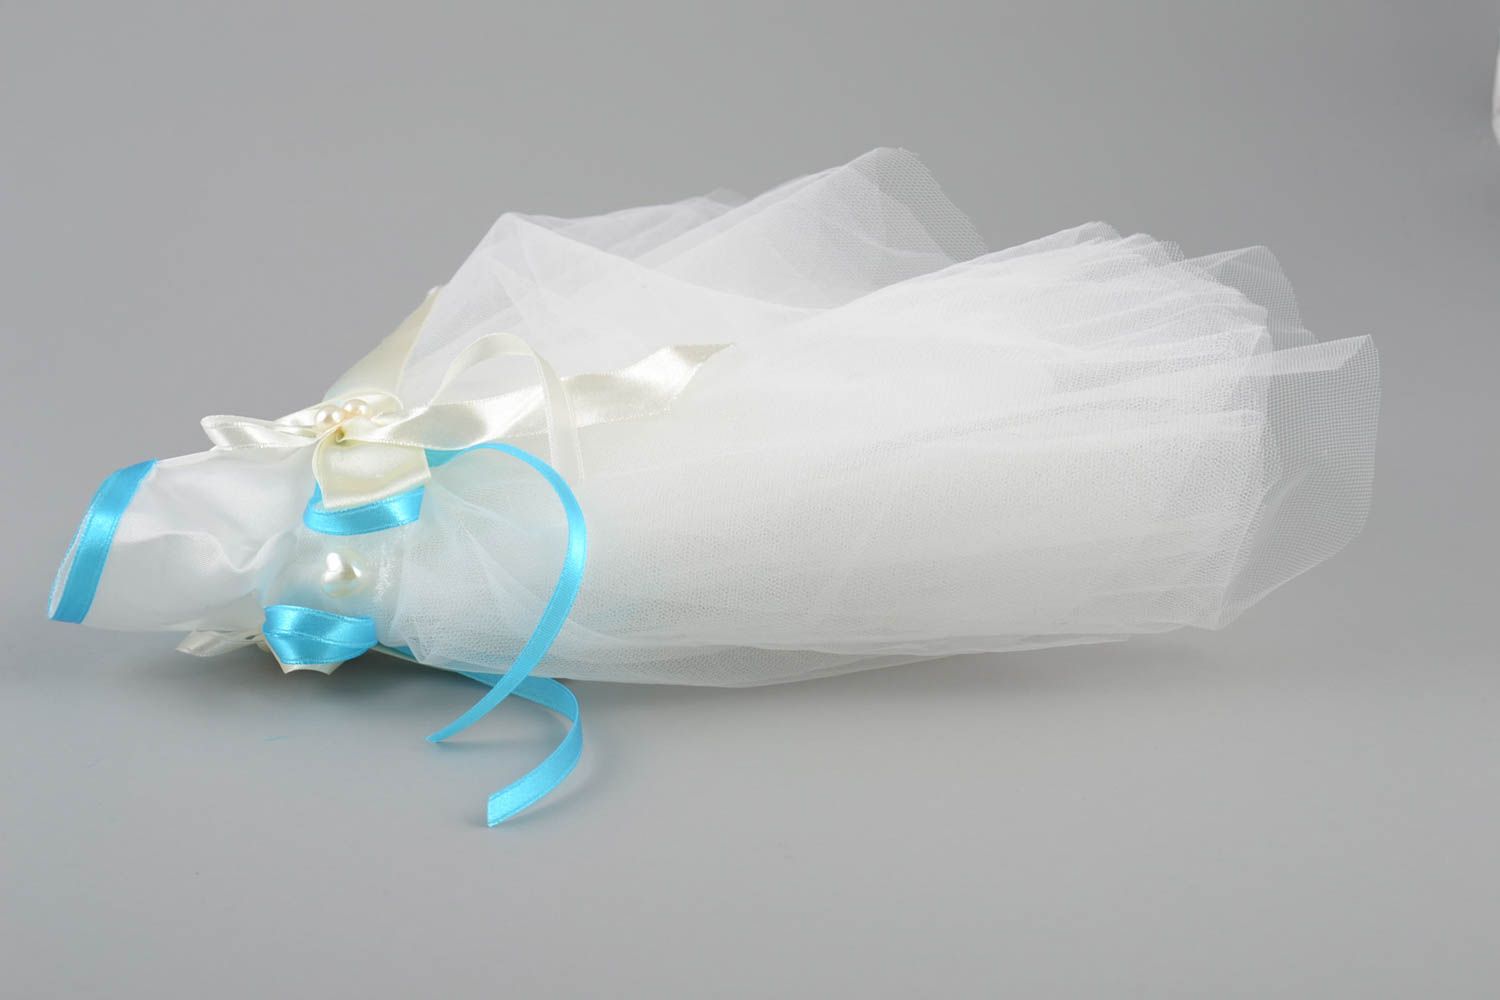 Одежда невесты на бутылку шампанского белая с голубым красивая ручной работы фото 4